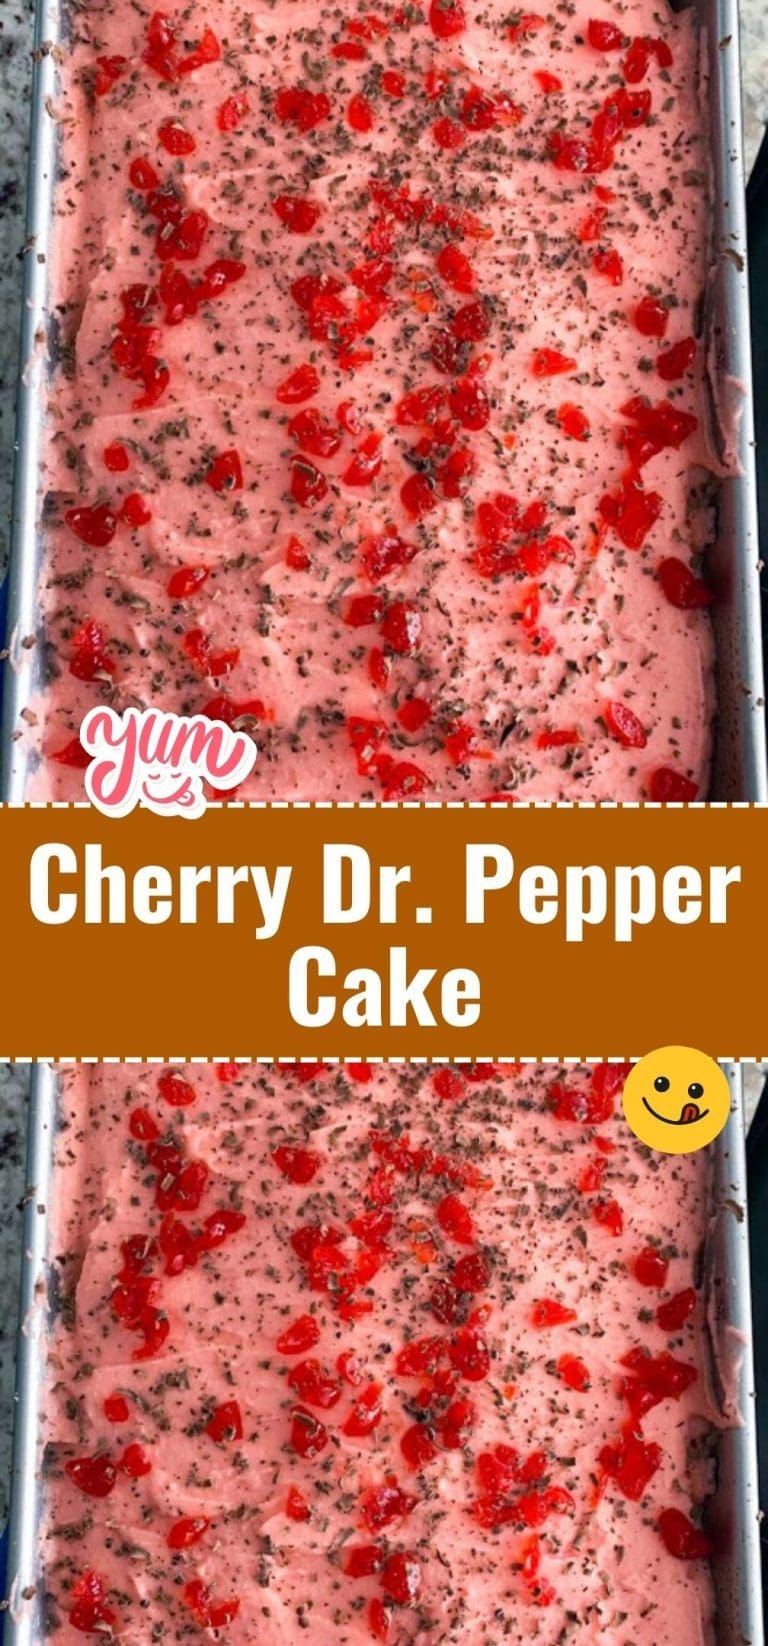 Cherry Dr. Pepper Cake